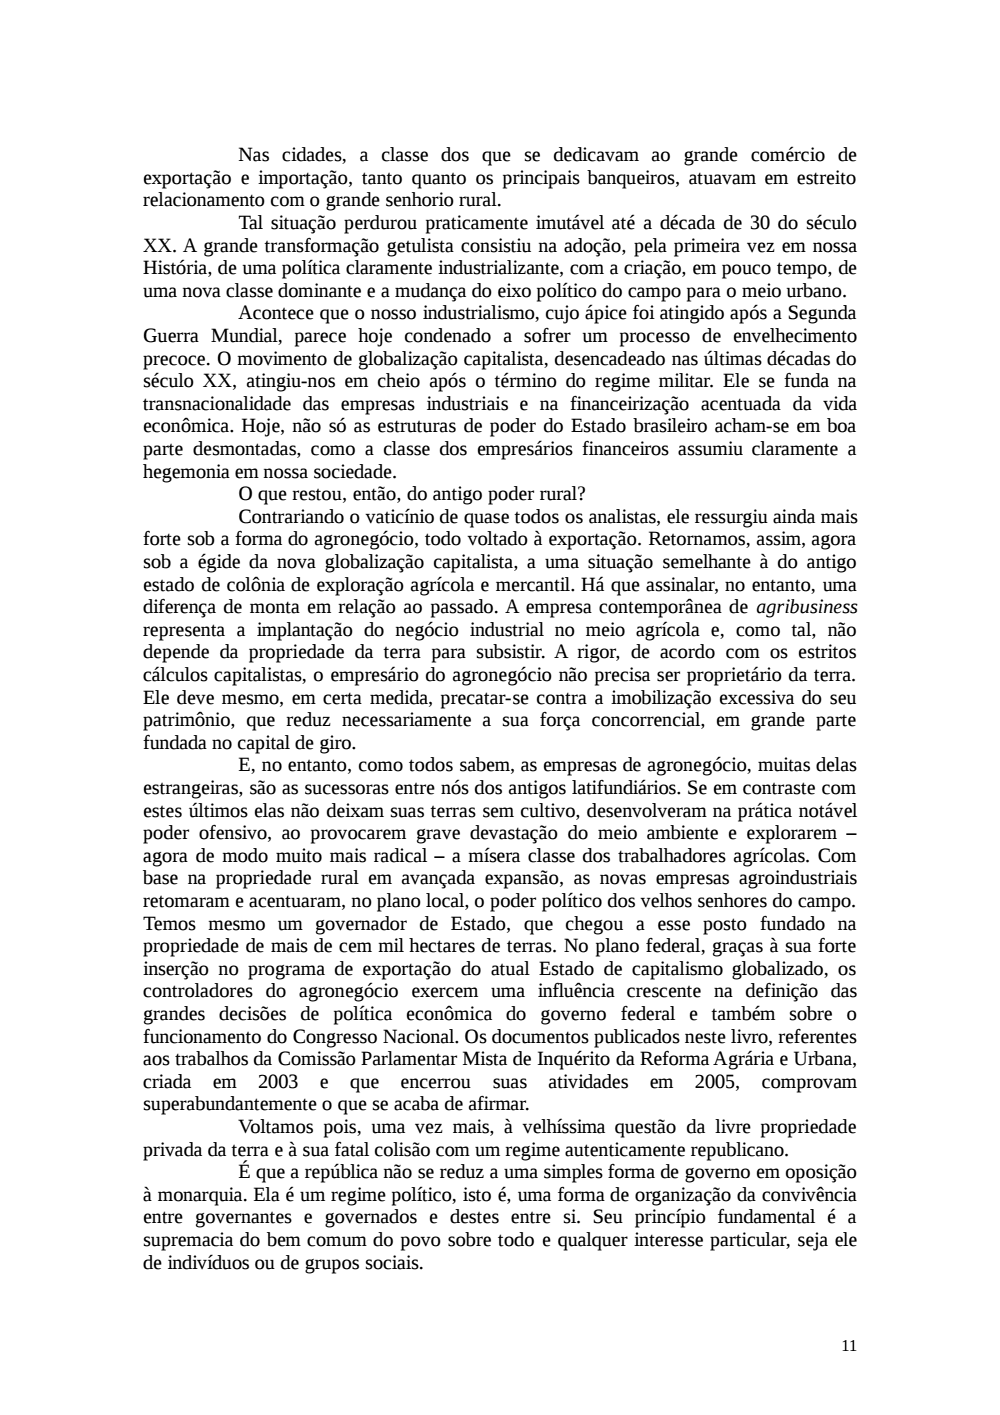 Page 11 from Relatório final da comissão